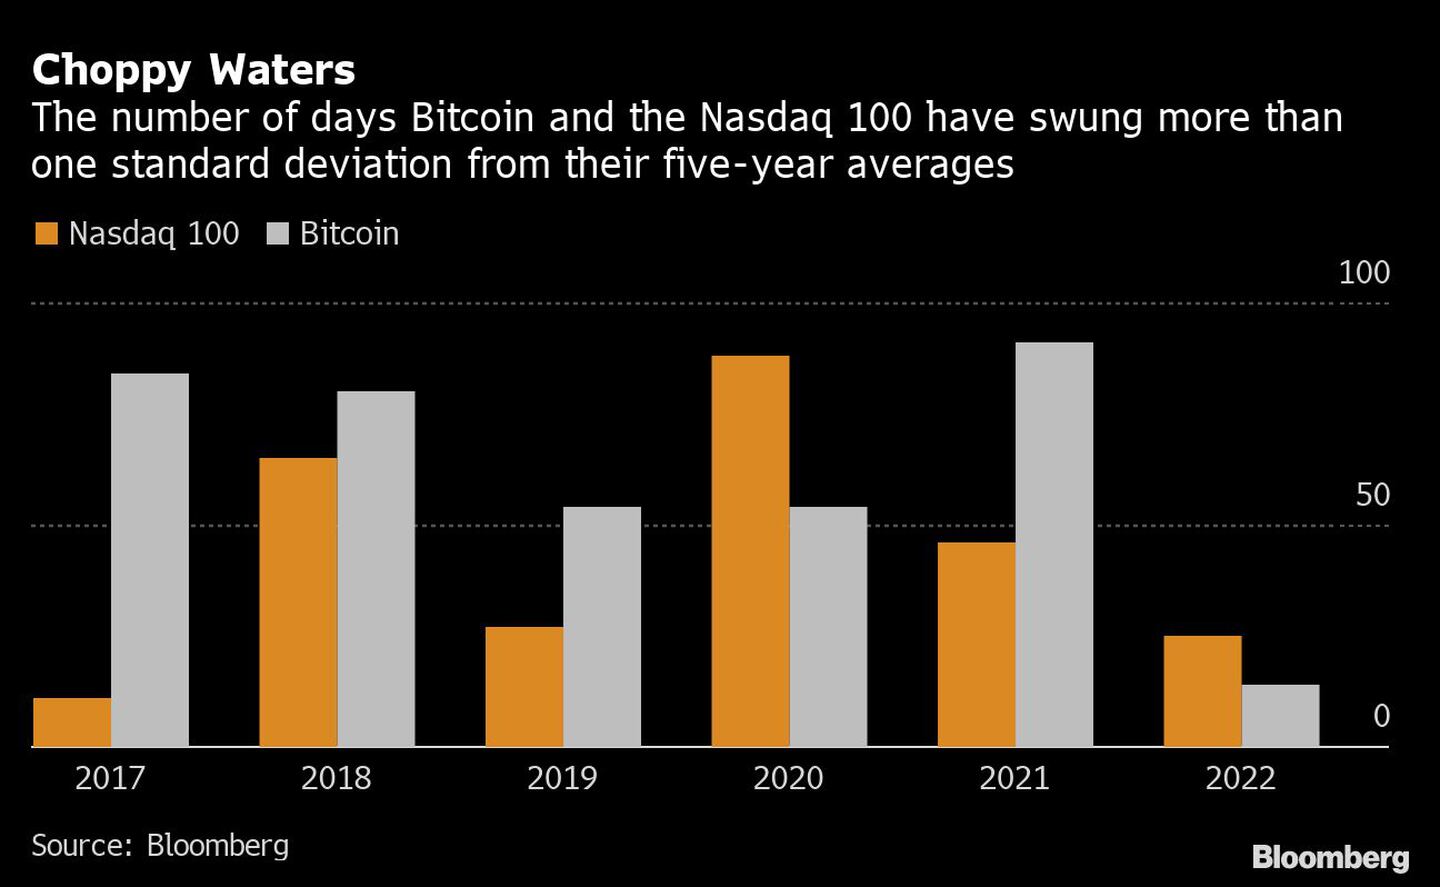 Aguas agitadas
Número de días en los que el bitcoin y el Nasdaq 100 han oscilado más de una desviación estándar de sus medias de cinco años
Naranja: Nasdaq 100 
Blanco: bitcoindfd